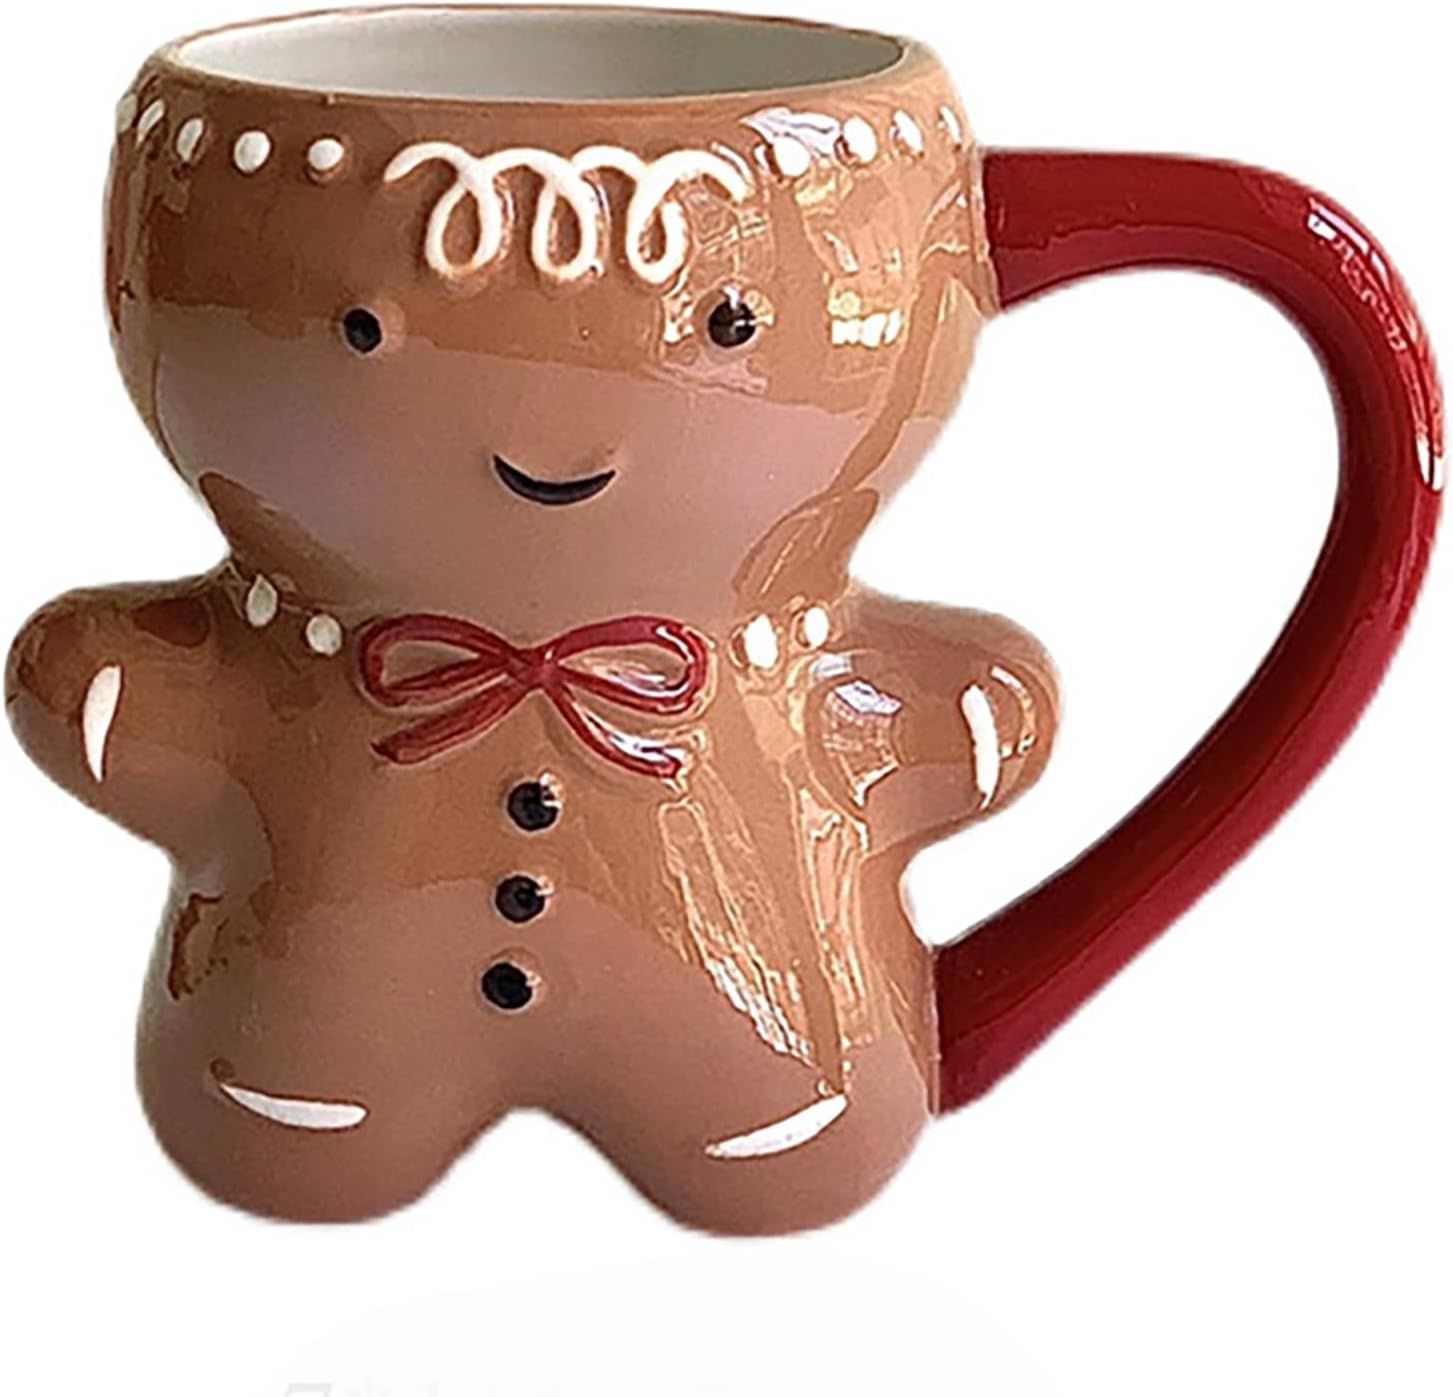 Tazza di Natale, tazza di pan di zenzero in ceramica, tazza dolce 300 ml Tazze divertenti – Reg... | Amazon (IT)